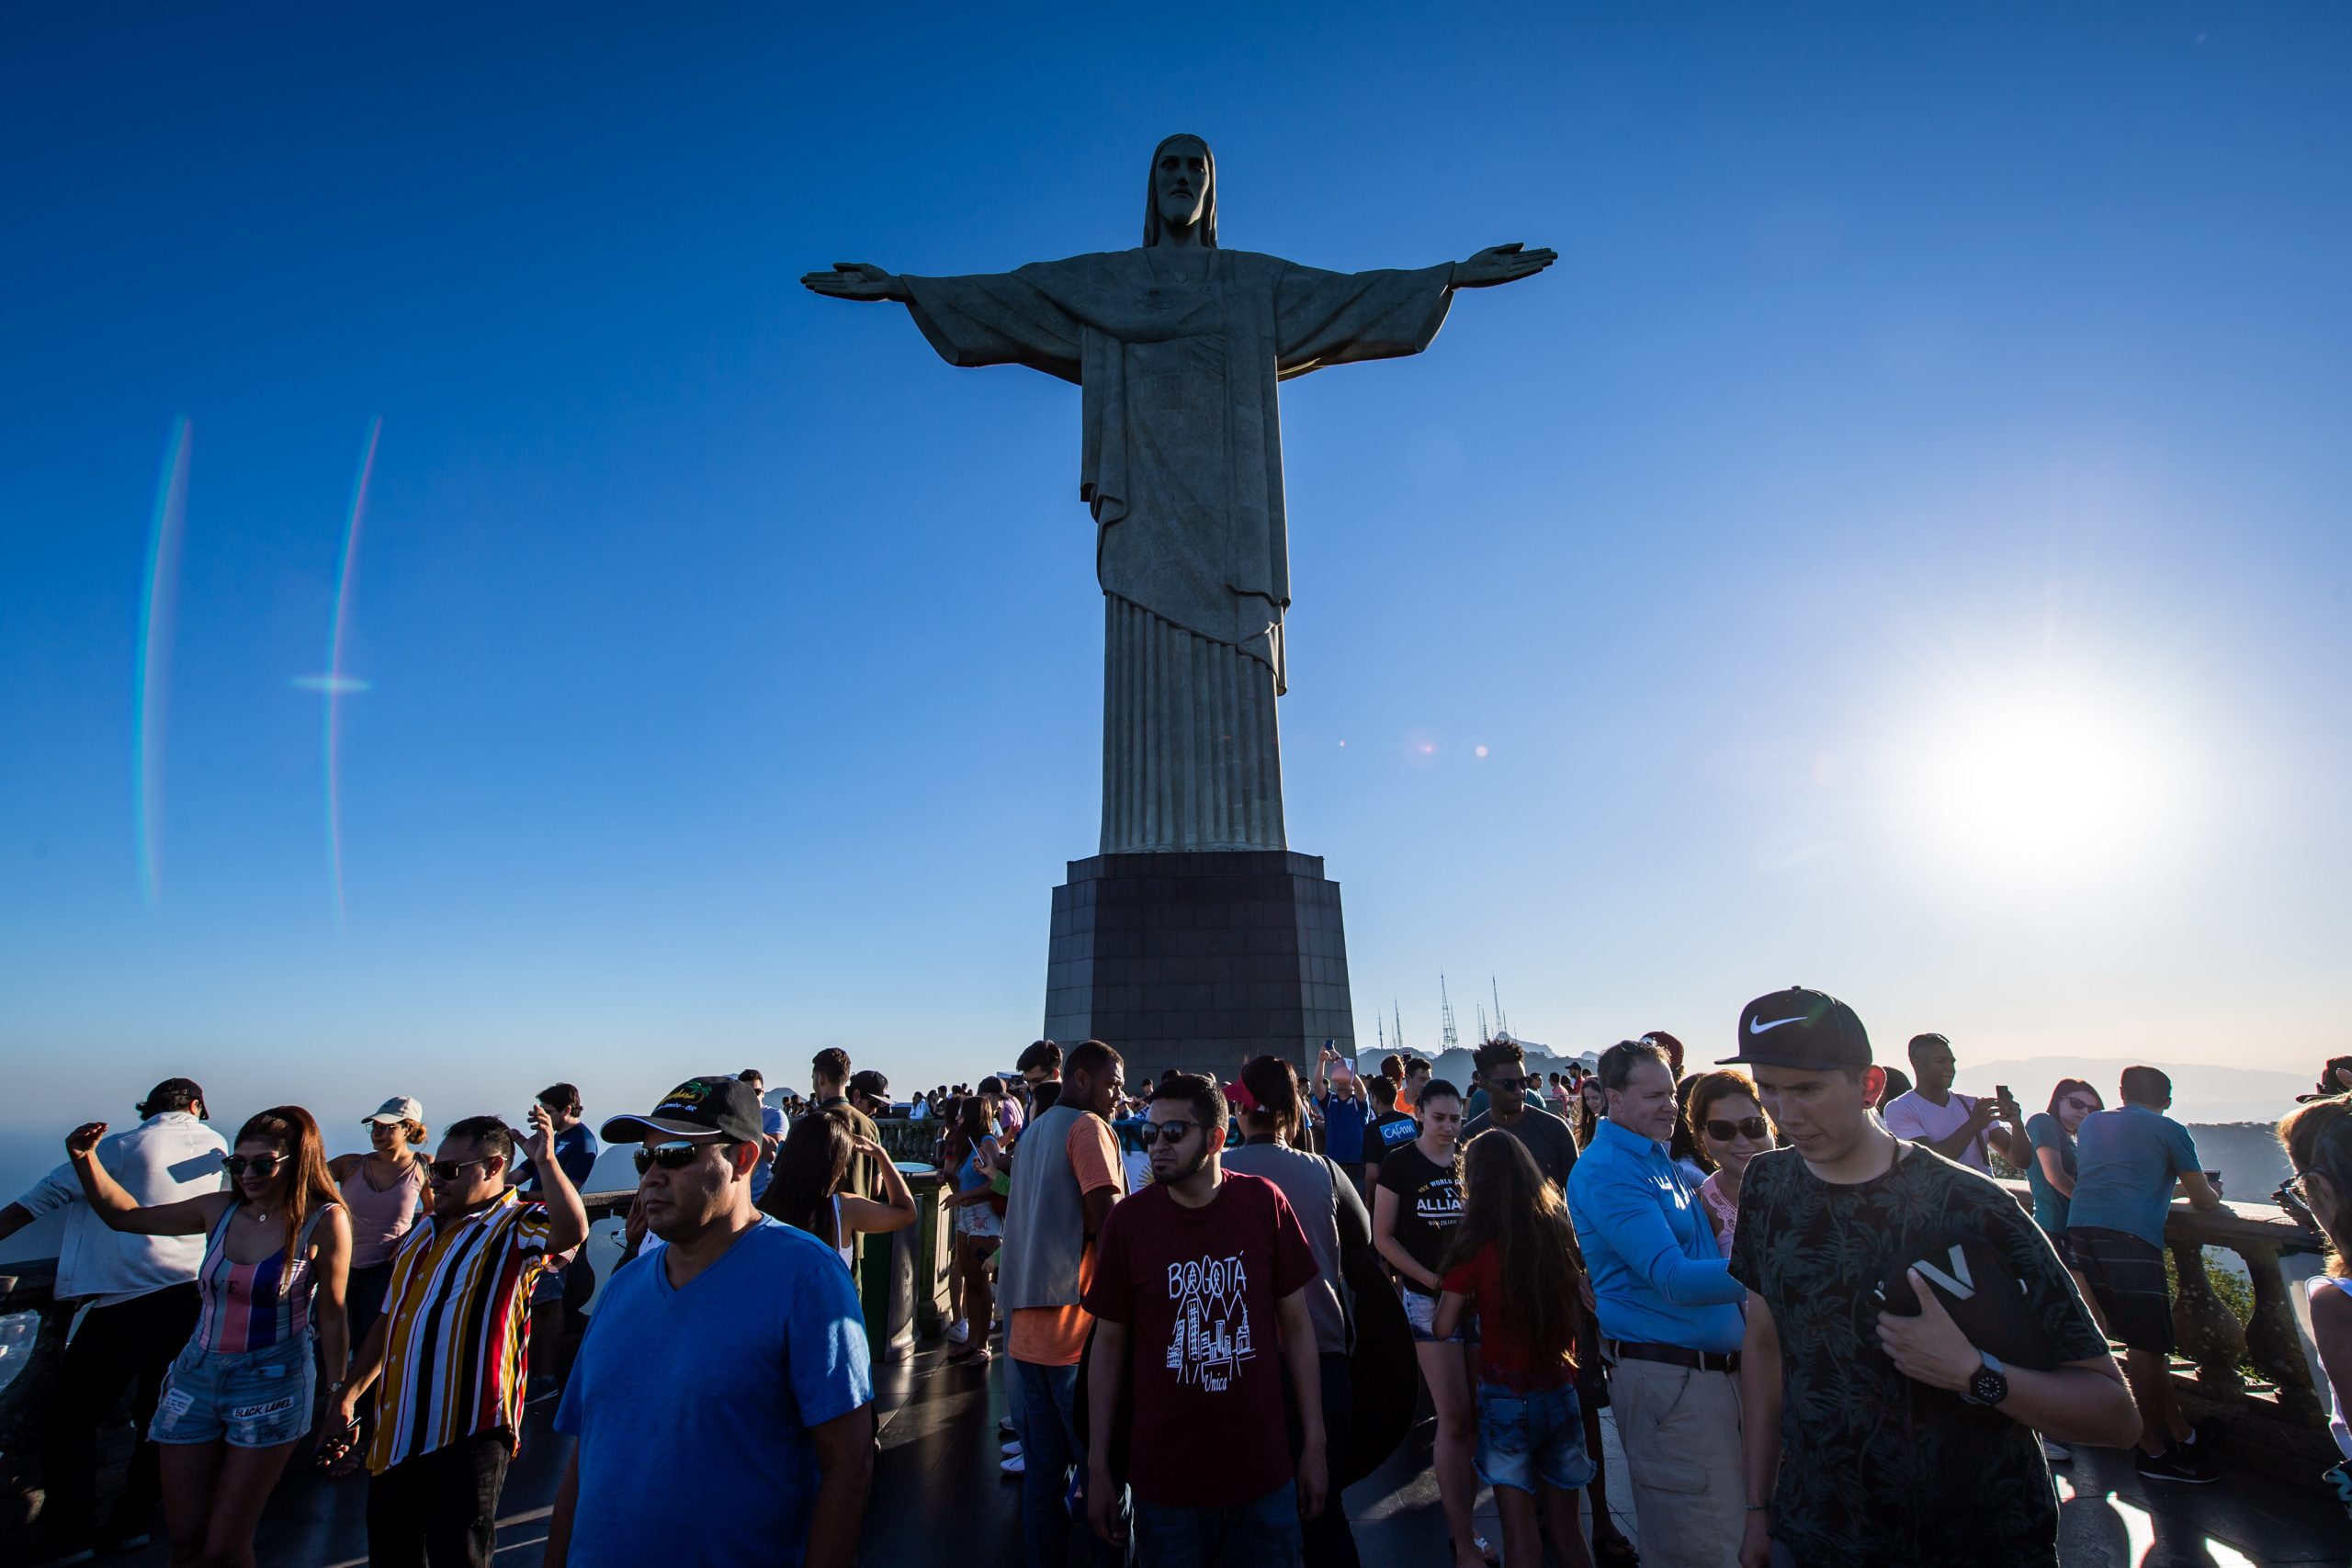 Cancelan festejo de Año Nuevo en Río de Janeiro por Ómicron